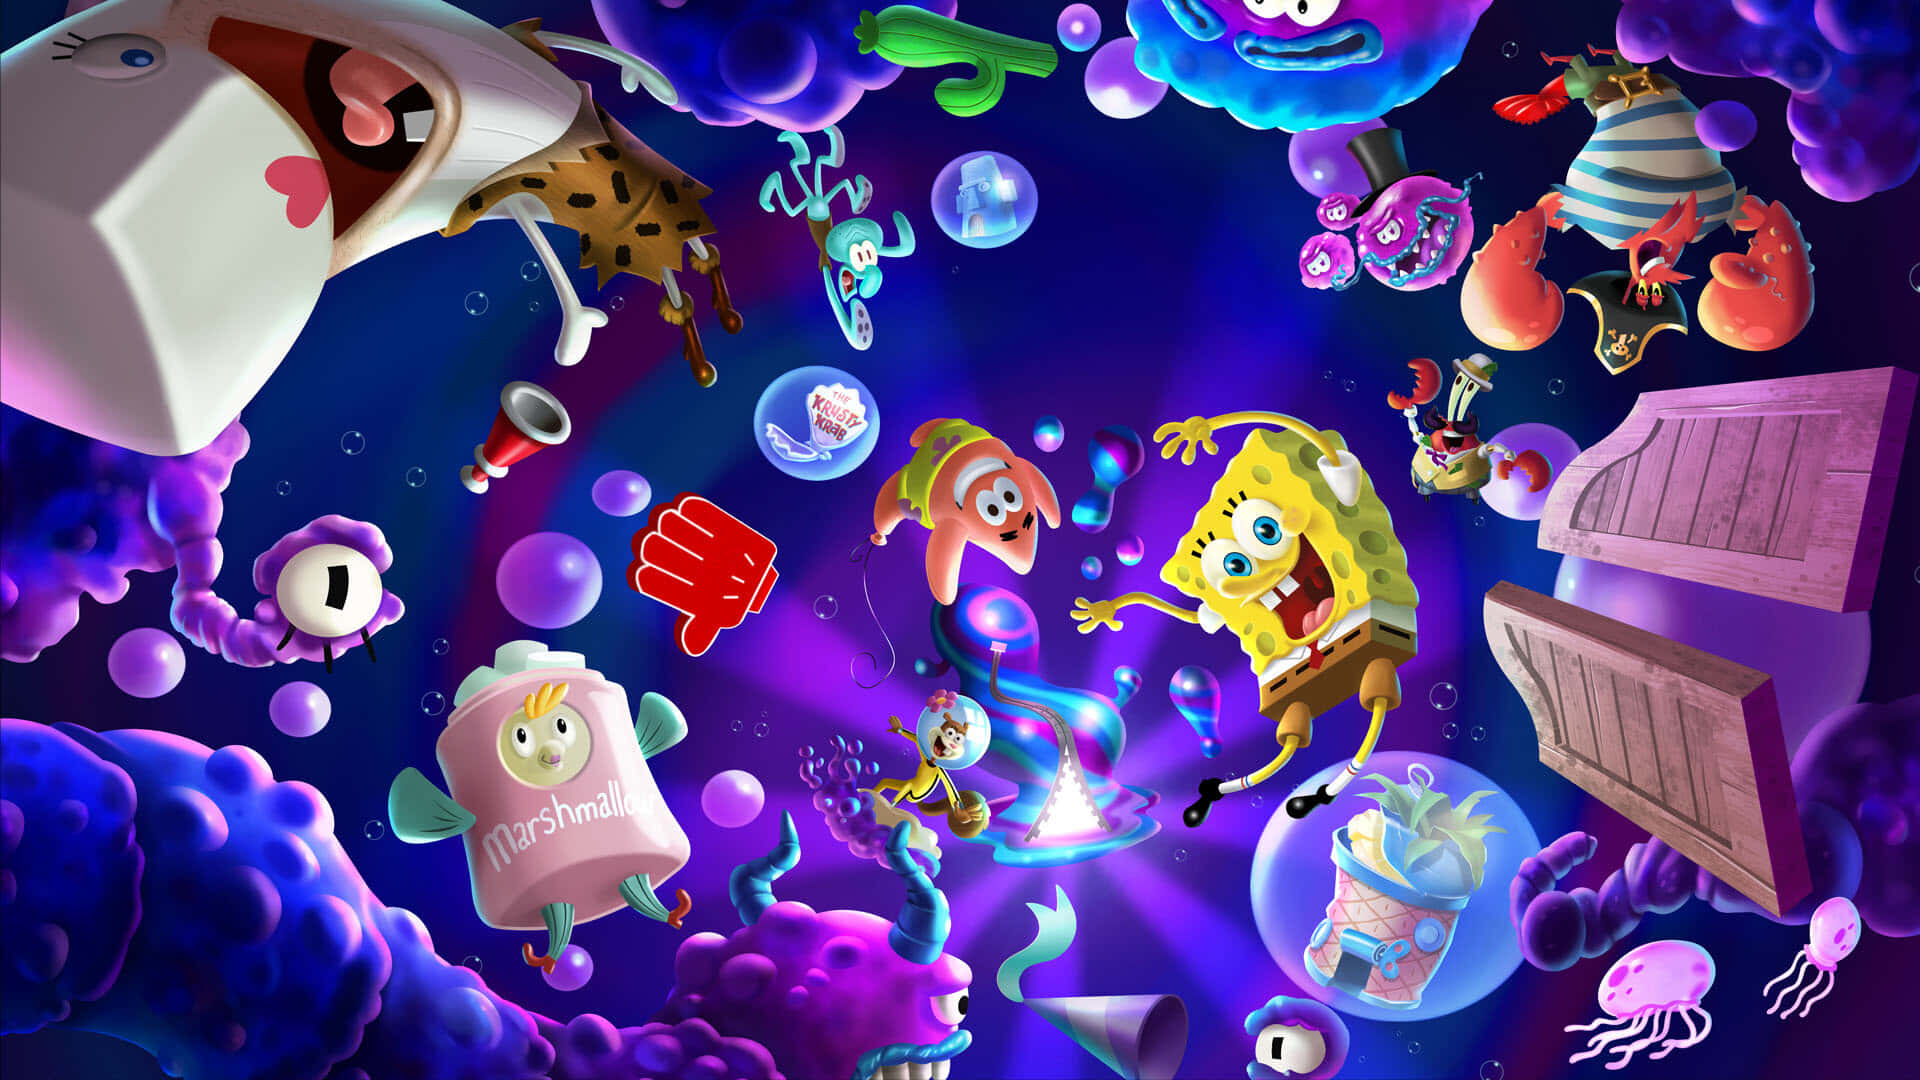 Spongebobsquarepants: L'immagine Di The Cosmic Shake